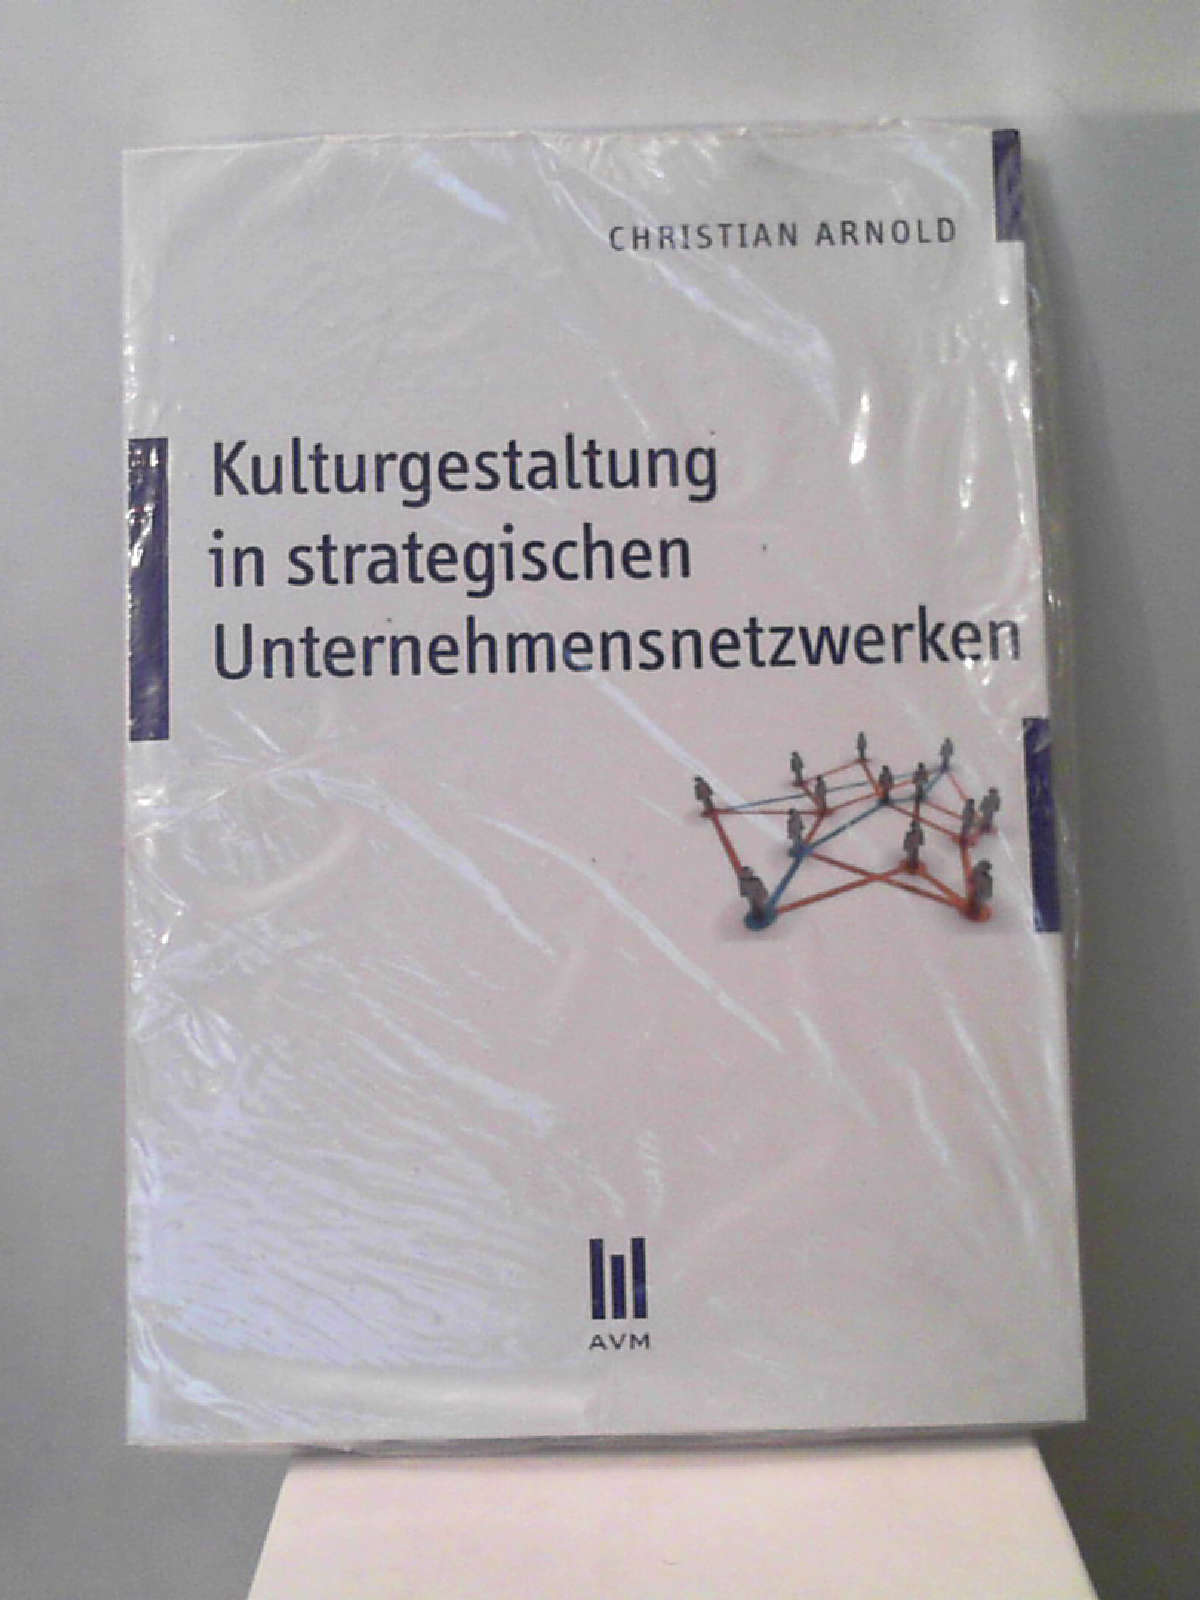 Kulturgestaltung in strategischen Unternehmensnetzwerken [Paperback] Christian Arnold - Christian Arnold